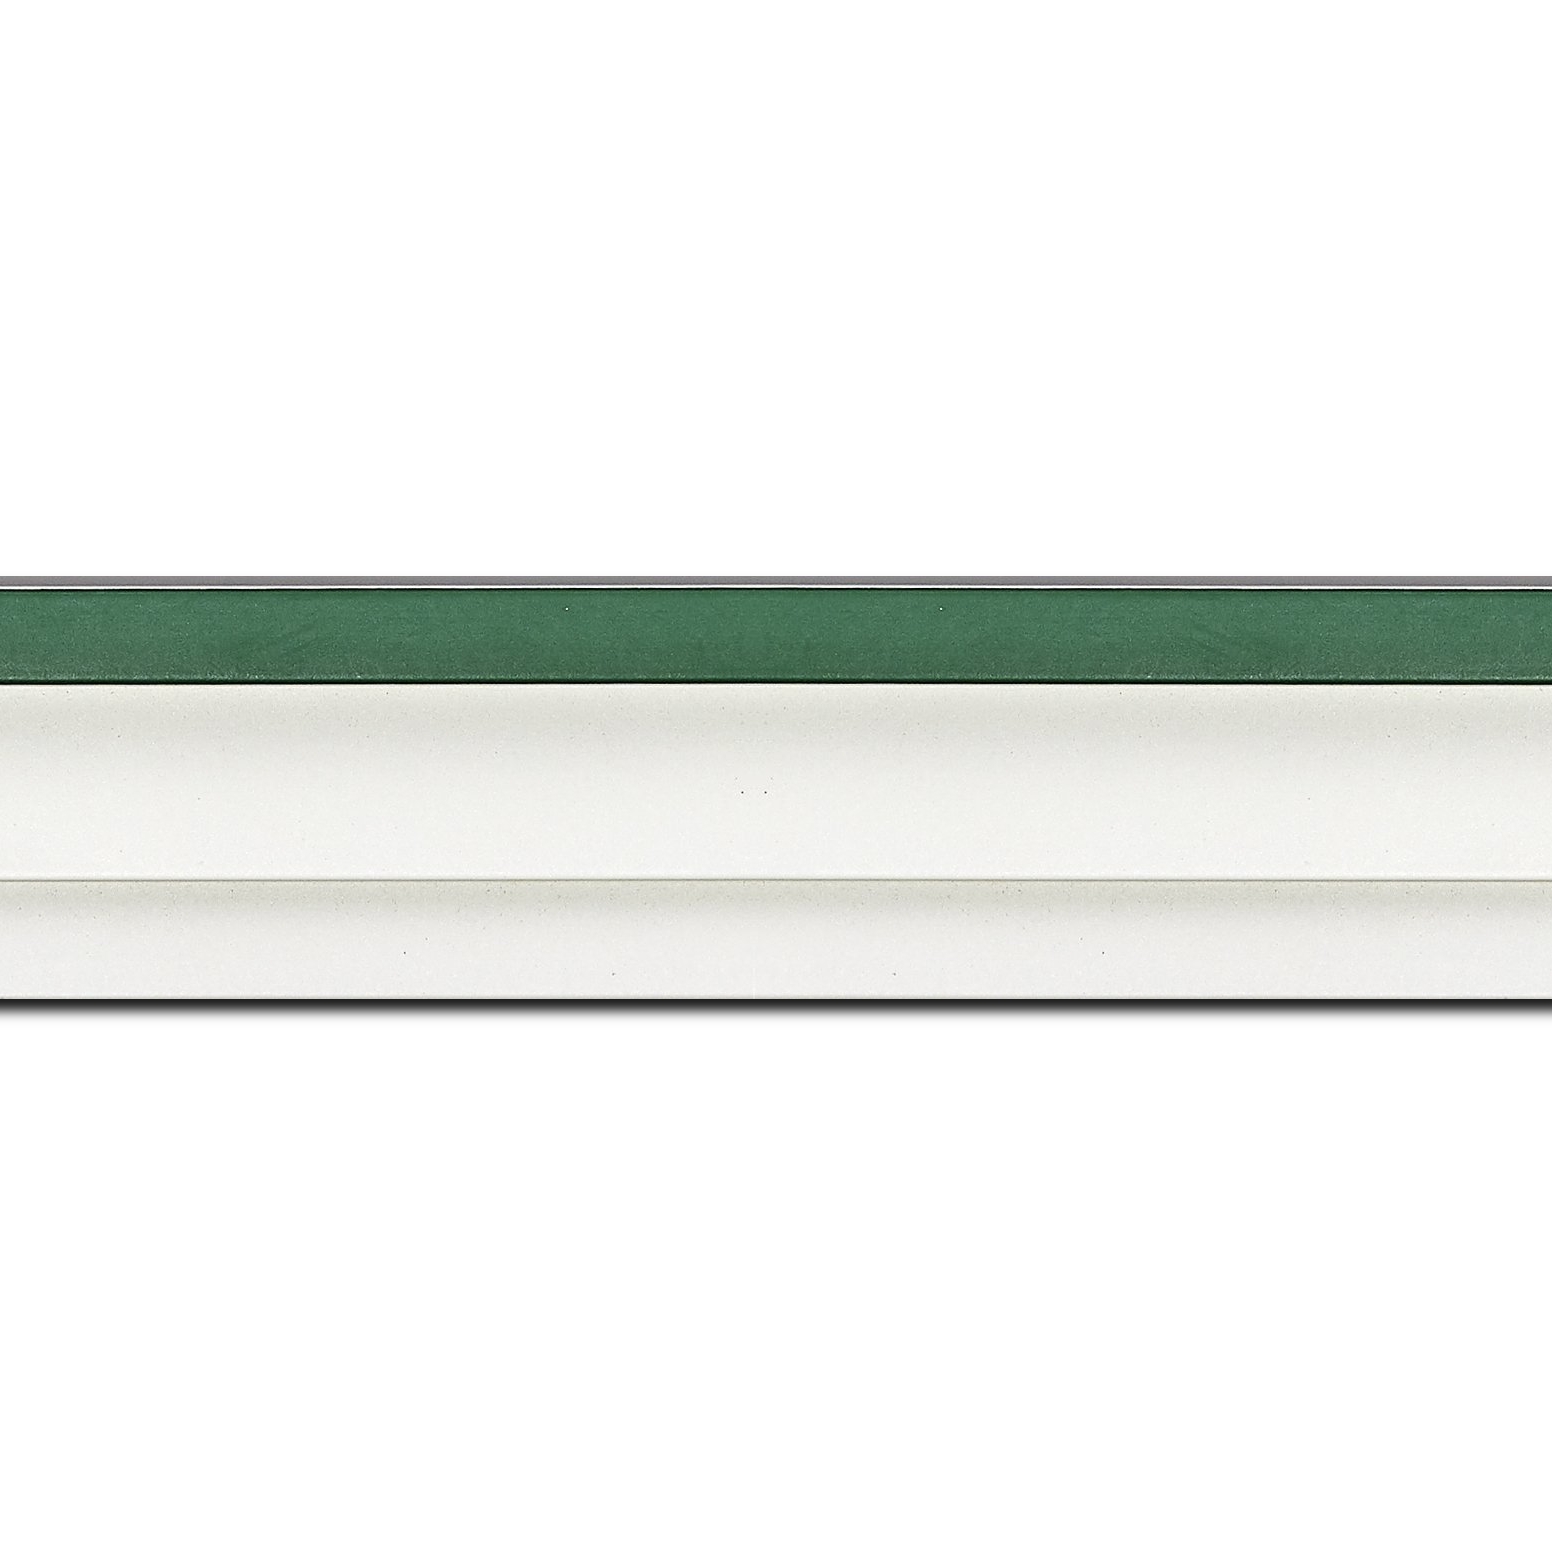 Caisse américaine pour peintures  americaine bois vert blanc — 84.1 x 118.9